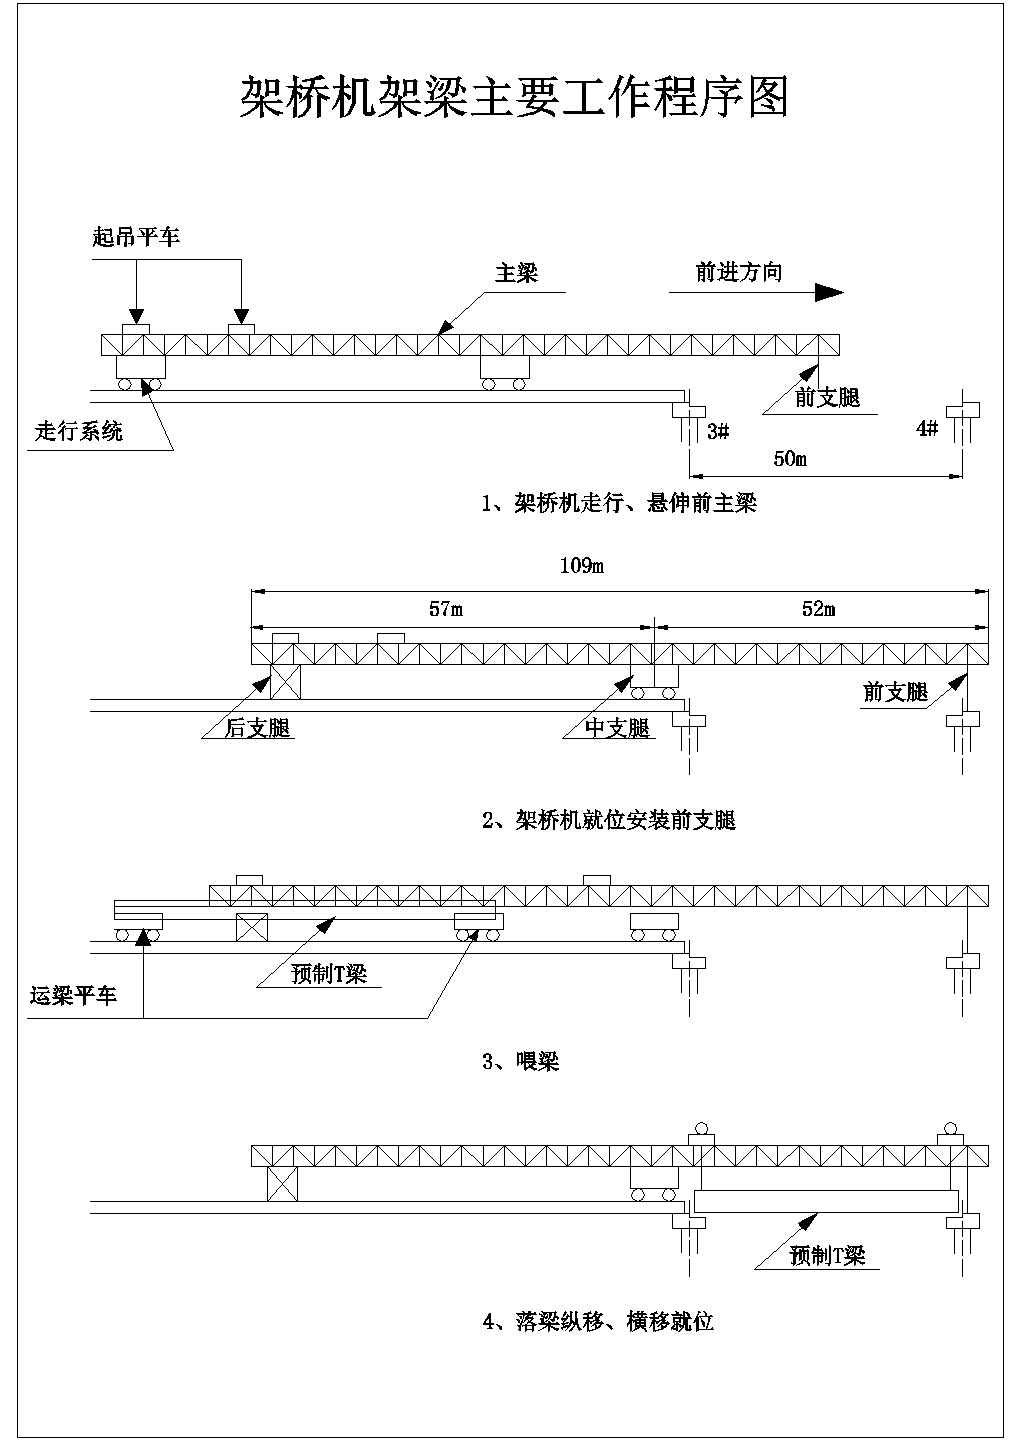 杭州市某路跨立交桥后张法预应力混凝土箱梁架设施工方案